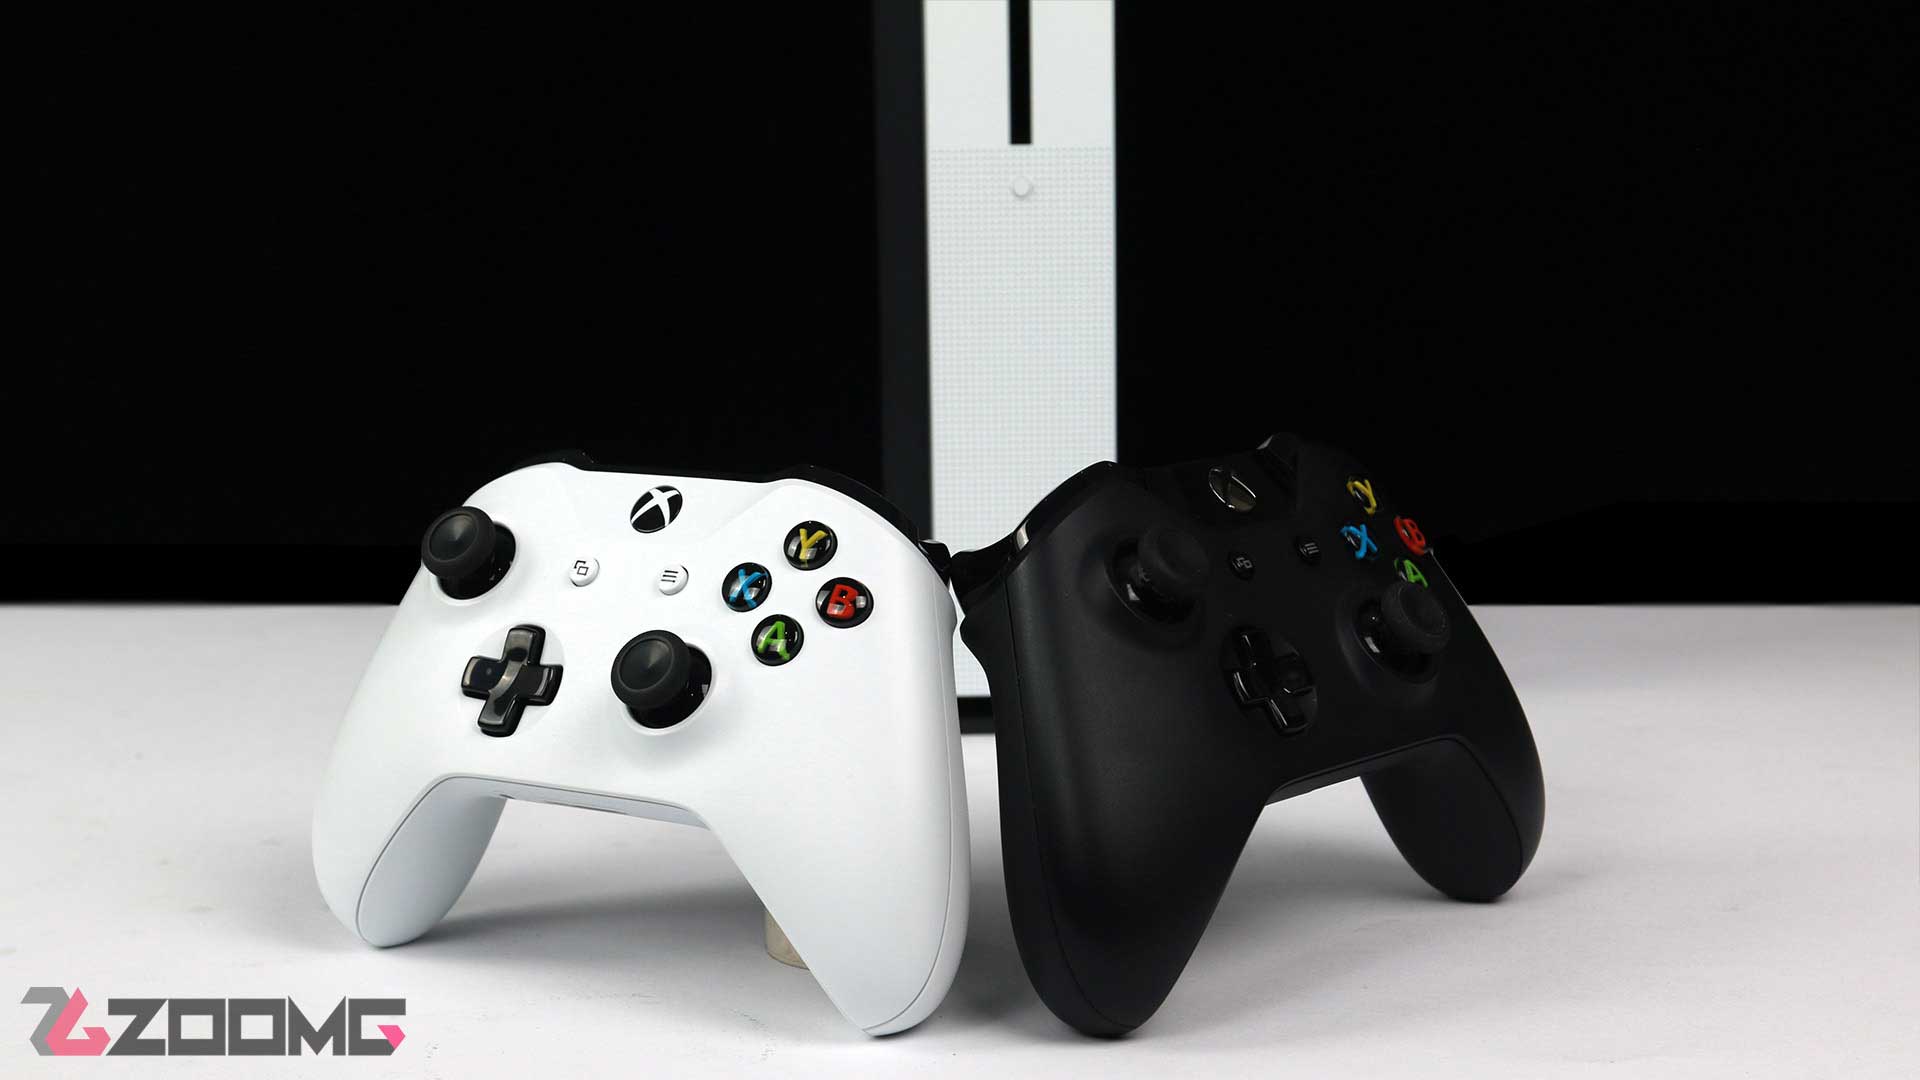 Xbox One S